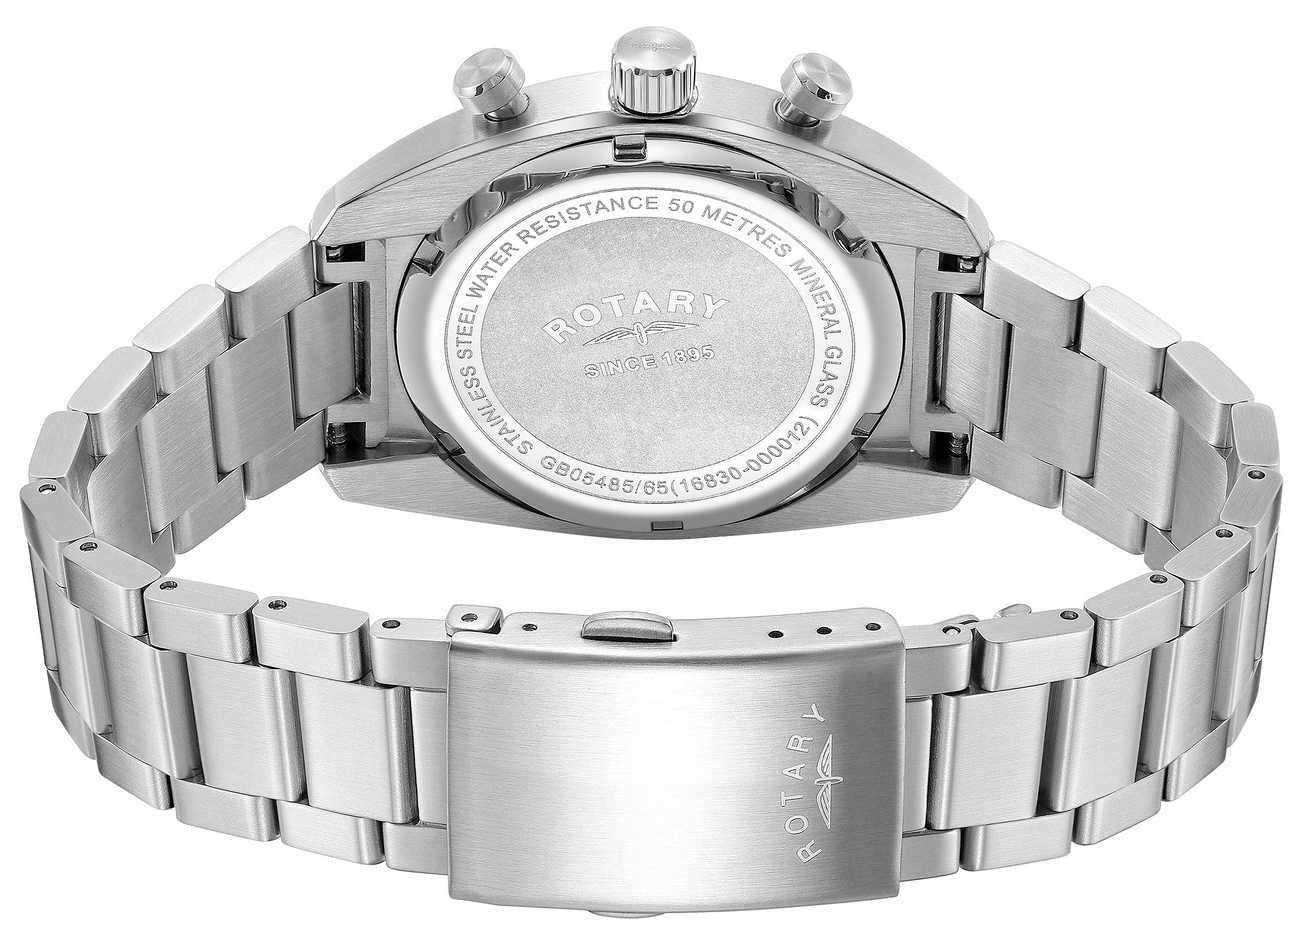 Rotary Mens Avenger Sport Chronograph Black Dial Stainless Steel Bracelet Watch